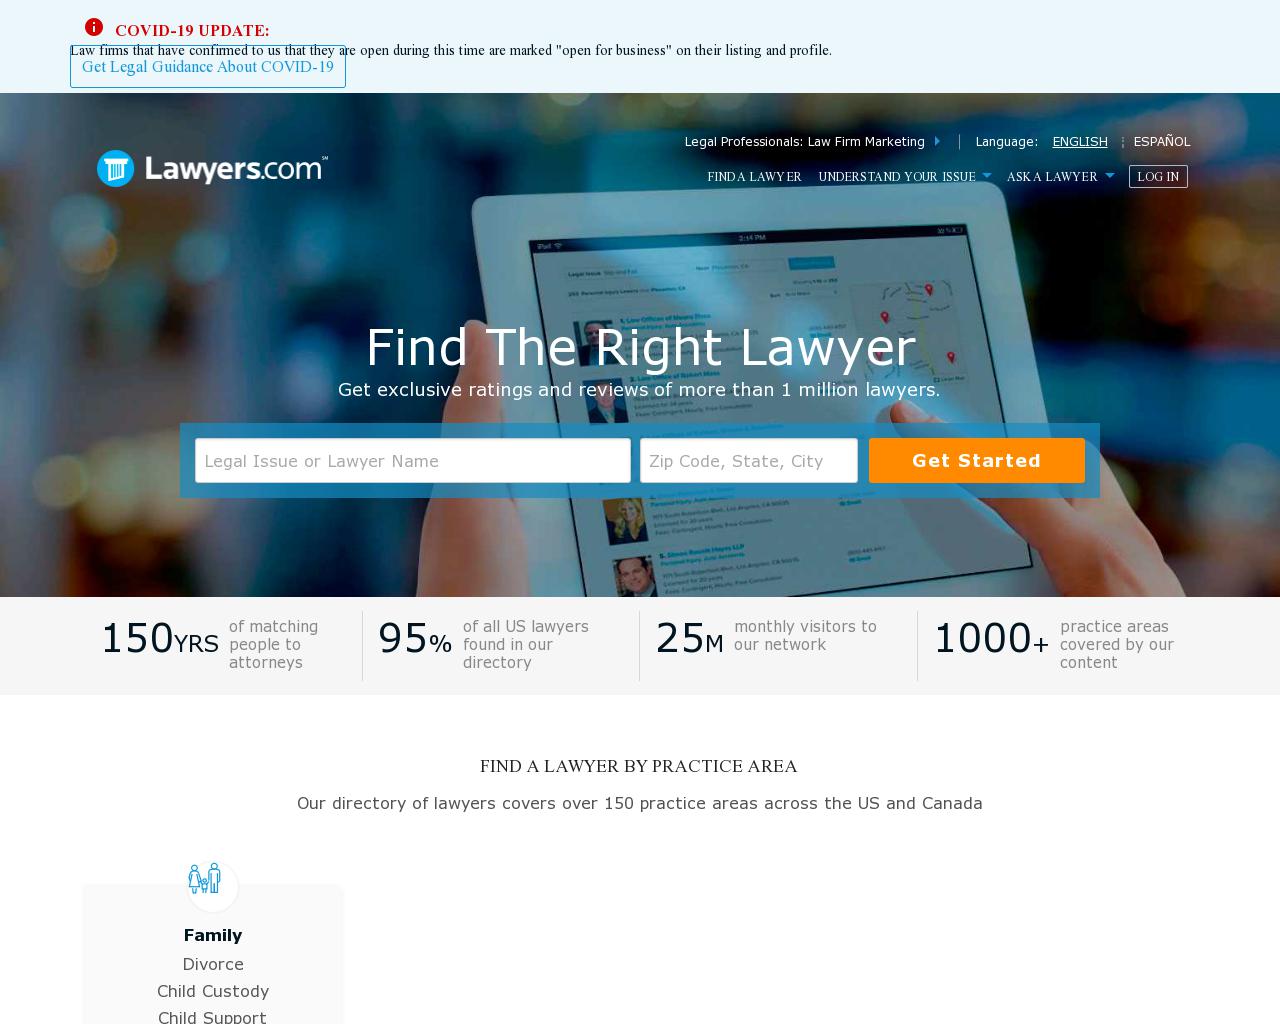 lawyers.com